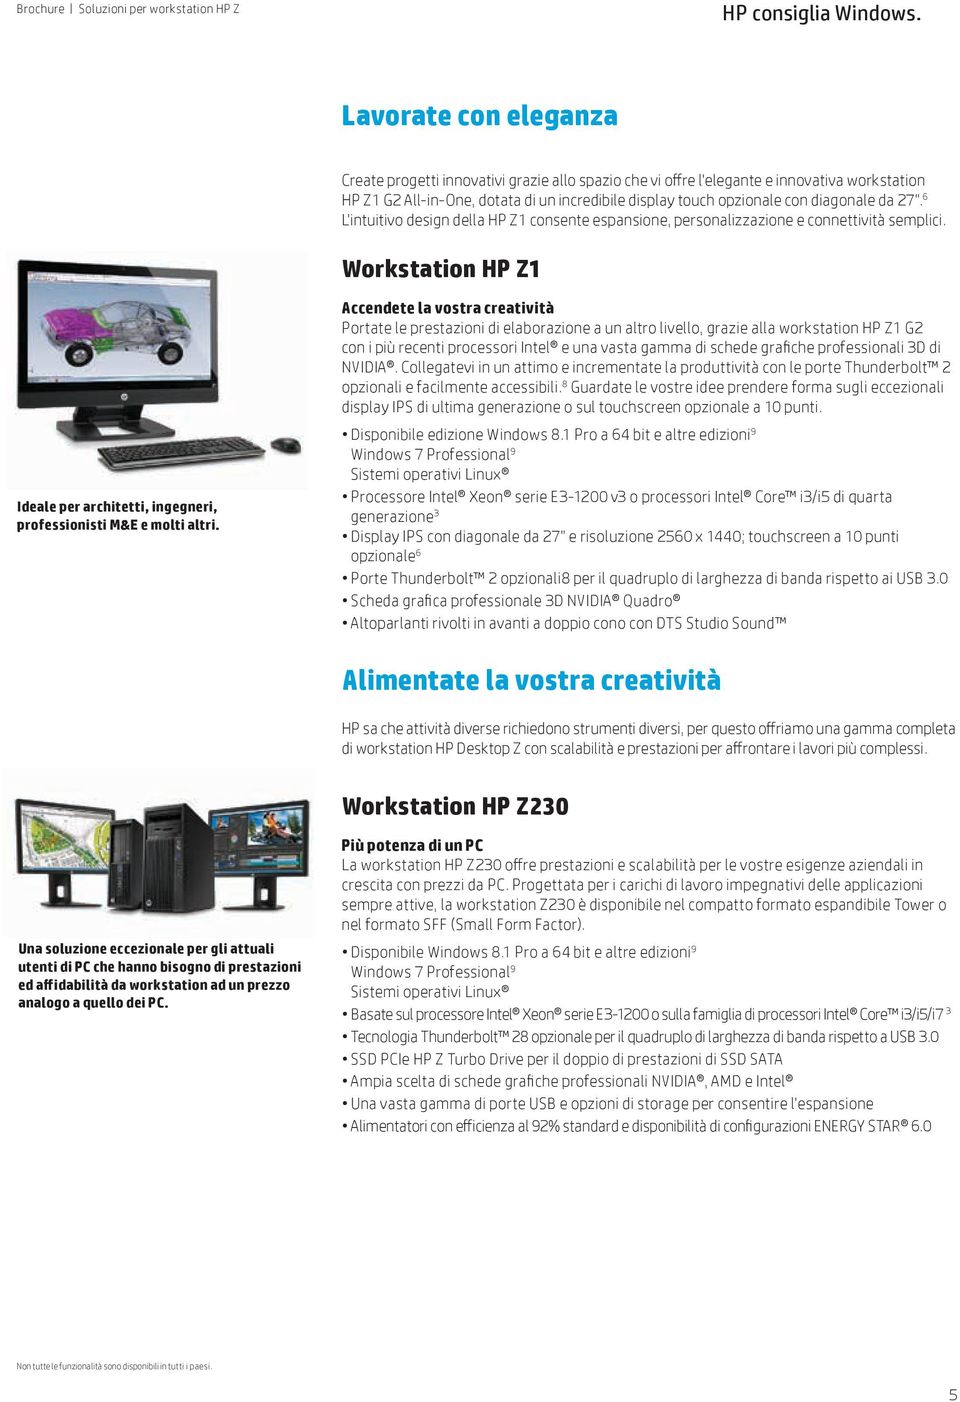 Workstation HP Z1 Accendete la vostra creatività Portate le prestazioni di elaborazione a un altro livello, grazie alla workstation HP Z1 G2 con i più recenti processori Intel e una vasta gamma di